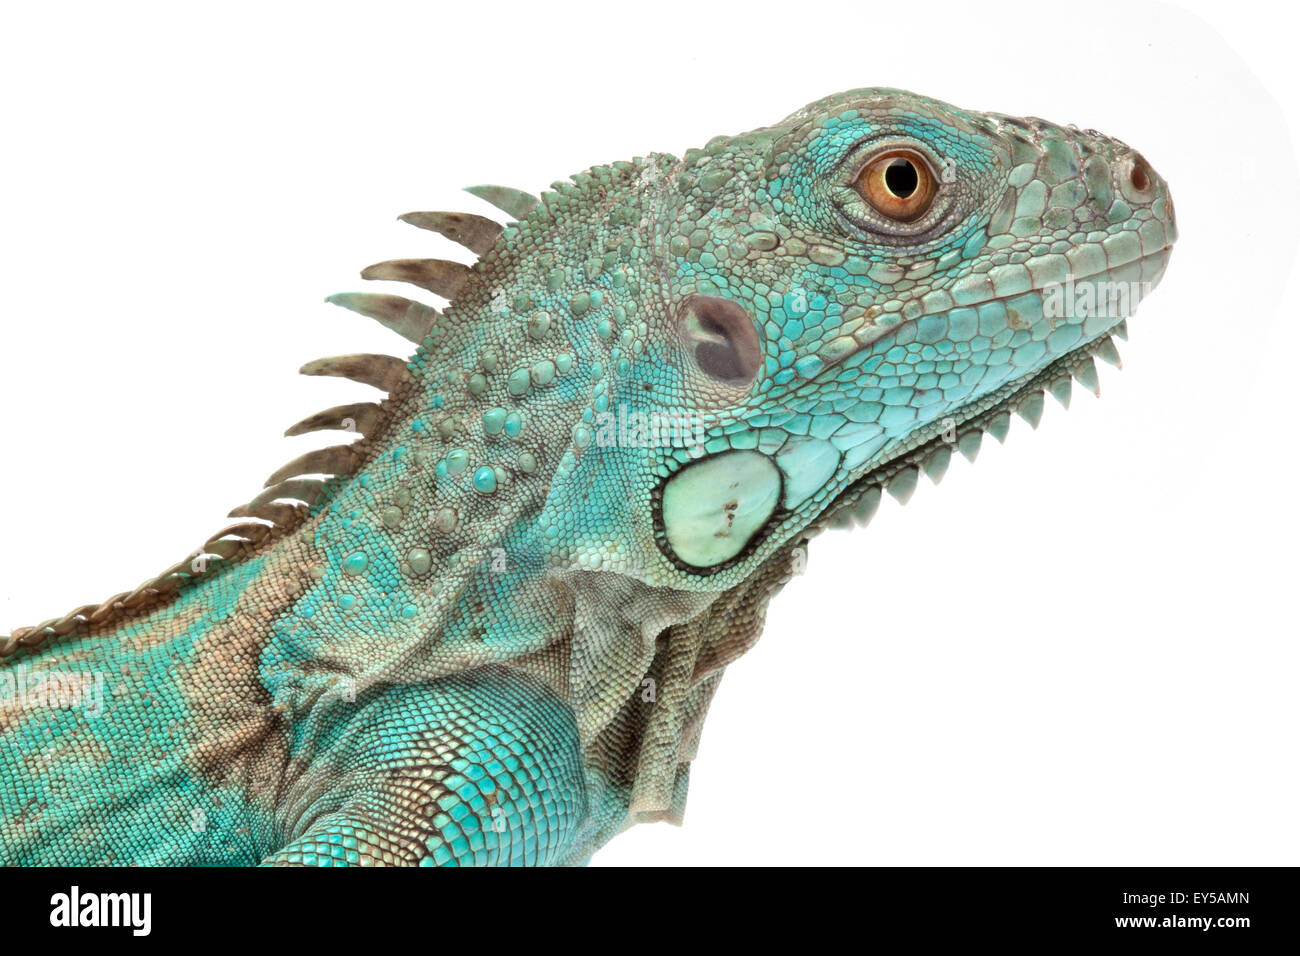 Retrato de iguana verde azul sobre fondo blanco de forma nativa de América central Foto de stock